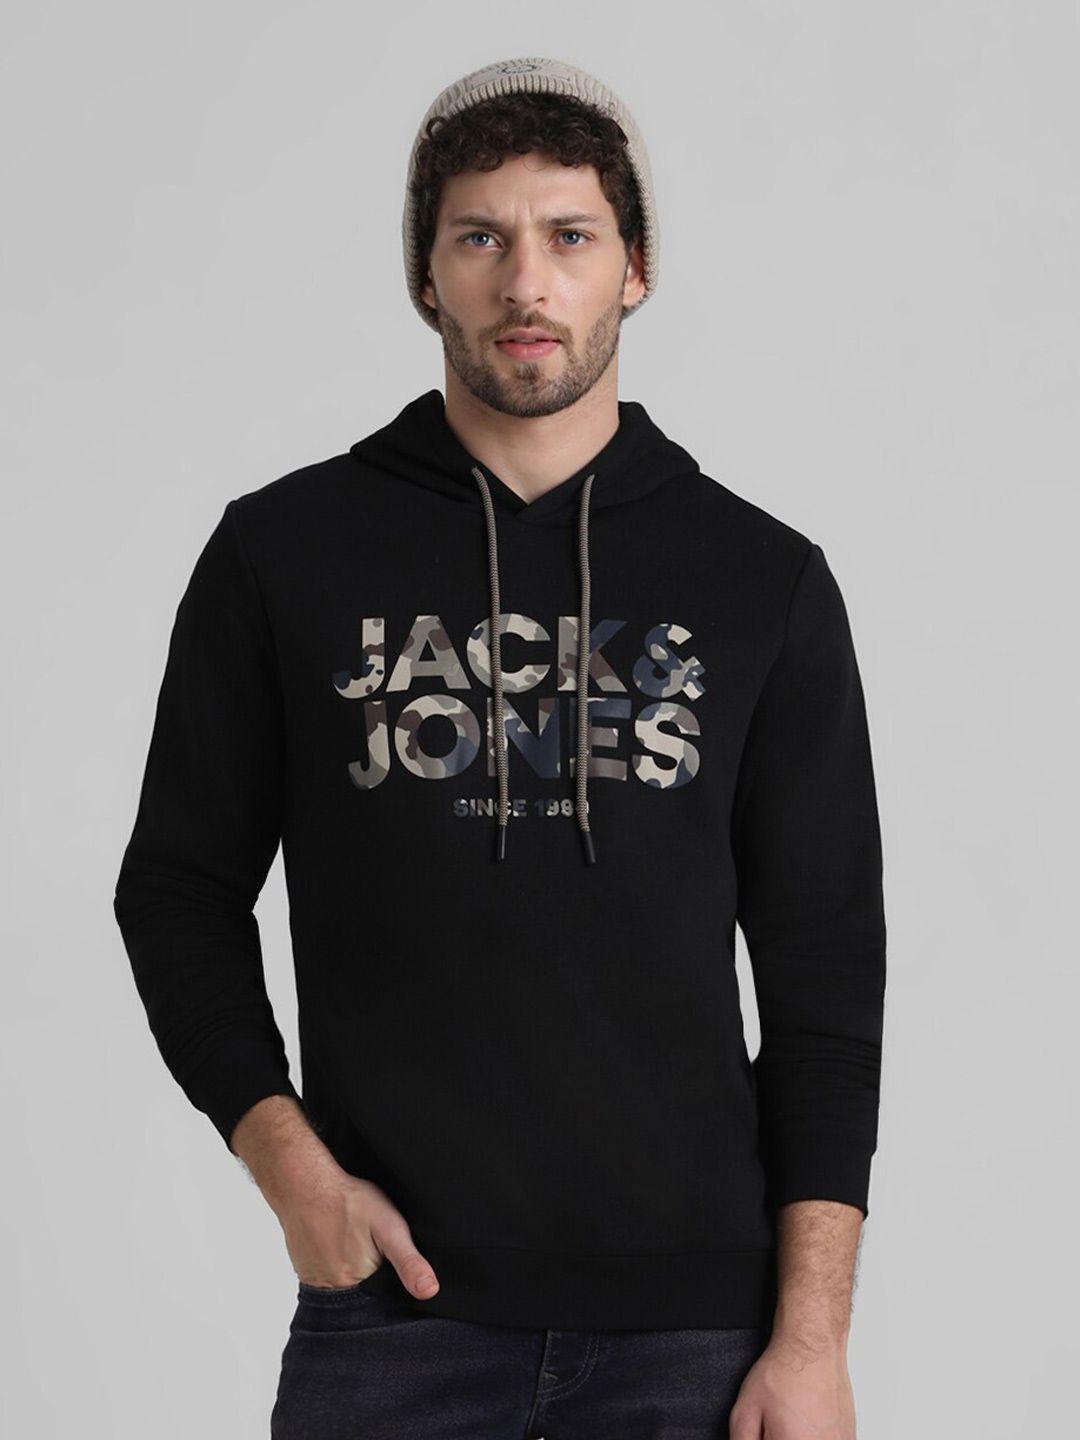 jack-&-jones-brand-logo-printed-hooded-sweatshirt